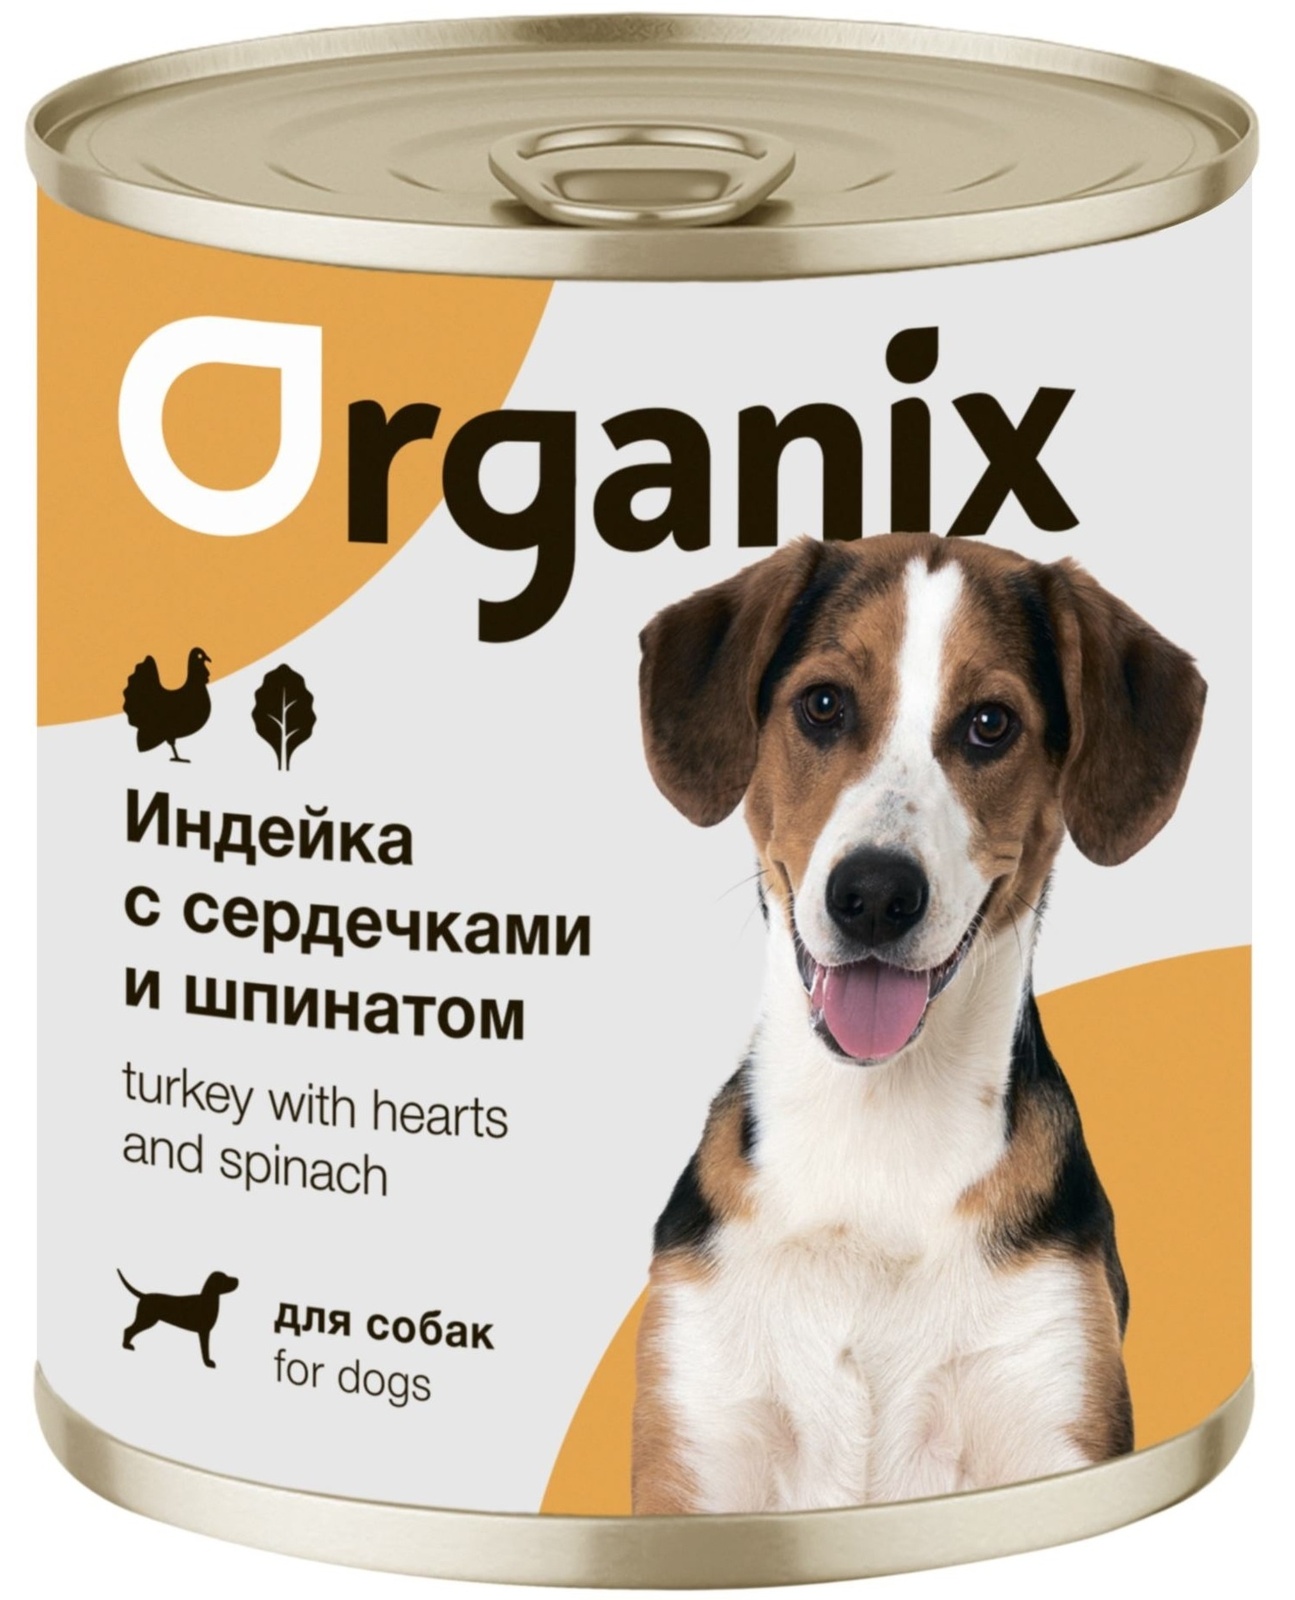 Organix консервы Organix консервы для собак Индейка с сердечками и шпинатом (100 г) organix консервы organix консервы для собак индейка с овощным ассорти 100 г